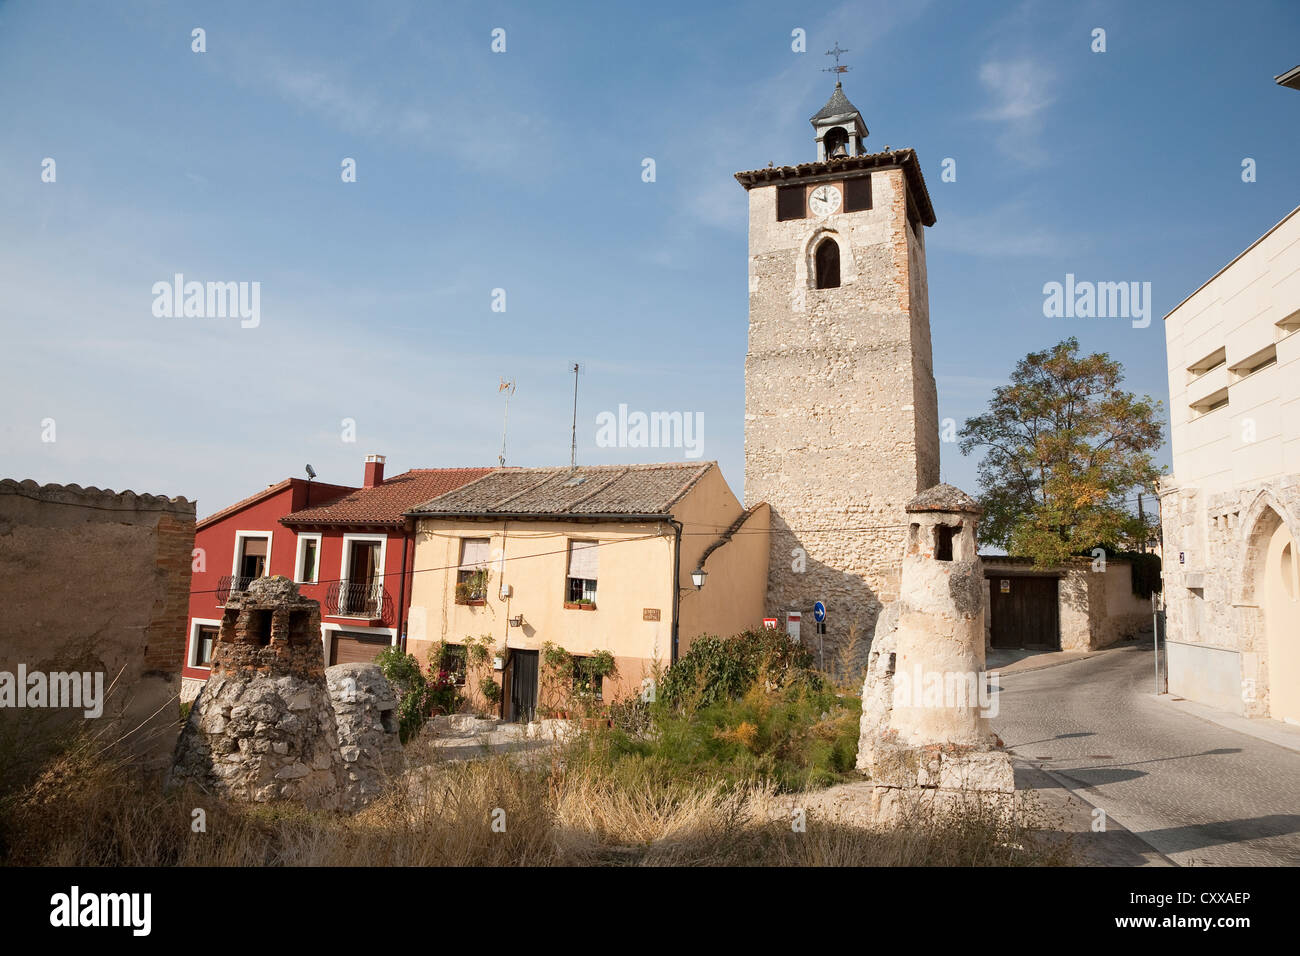 Torre del Reloj in Peñafiel with typical wine cellar chimneys - Peñafiel, Valladolid Province, Castile and León, Spain Stock Photo